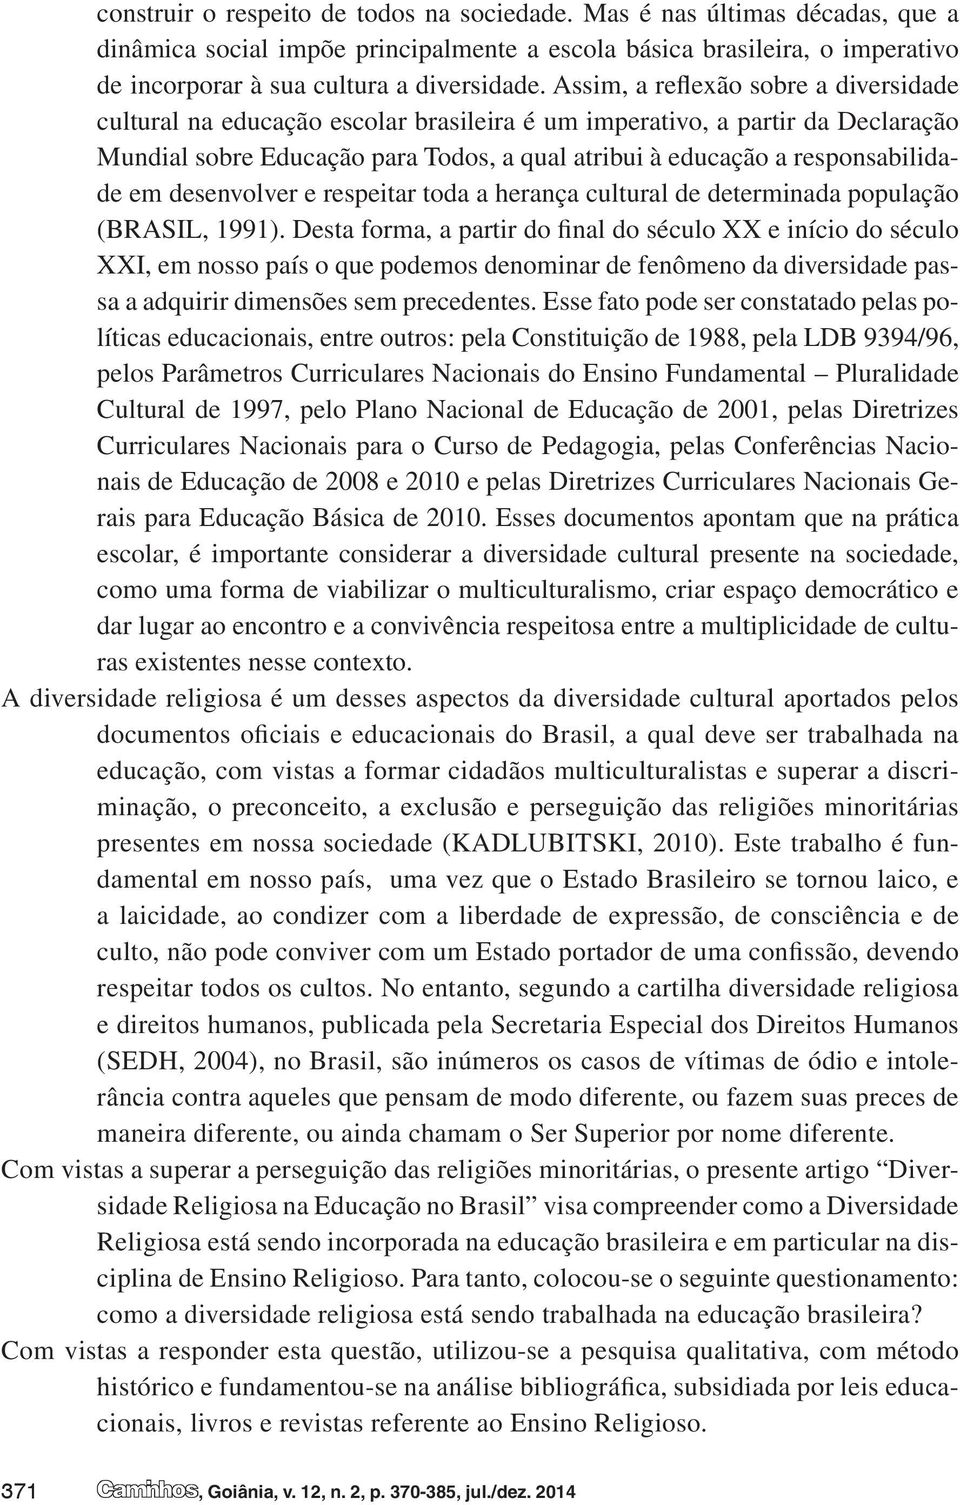 em desenvolver e respeitar toda a herança cultural de determinada população (BRASIL, 1991).